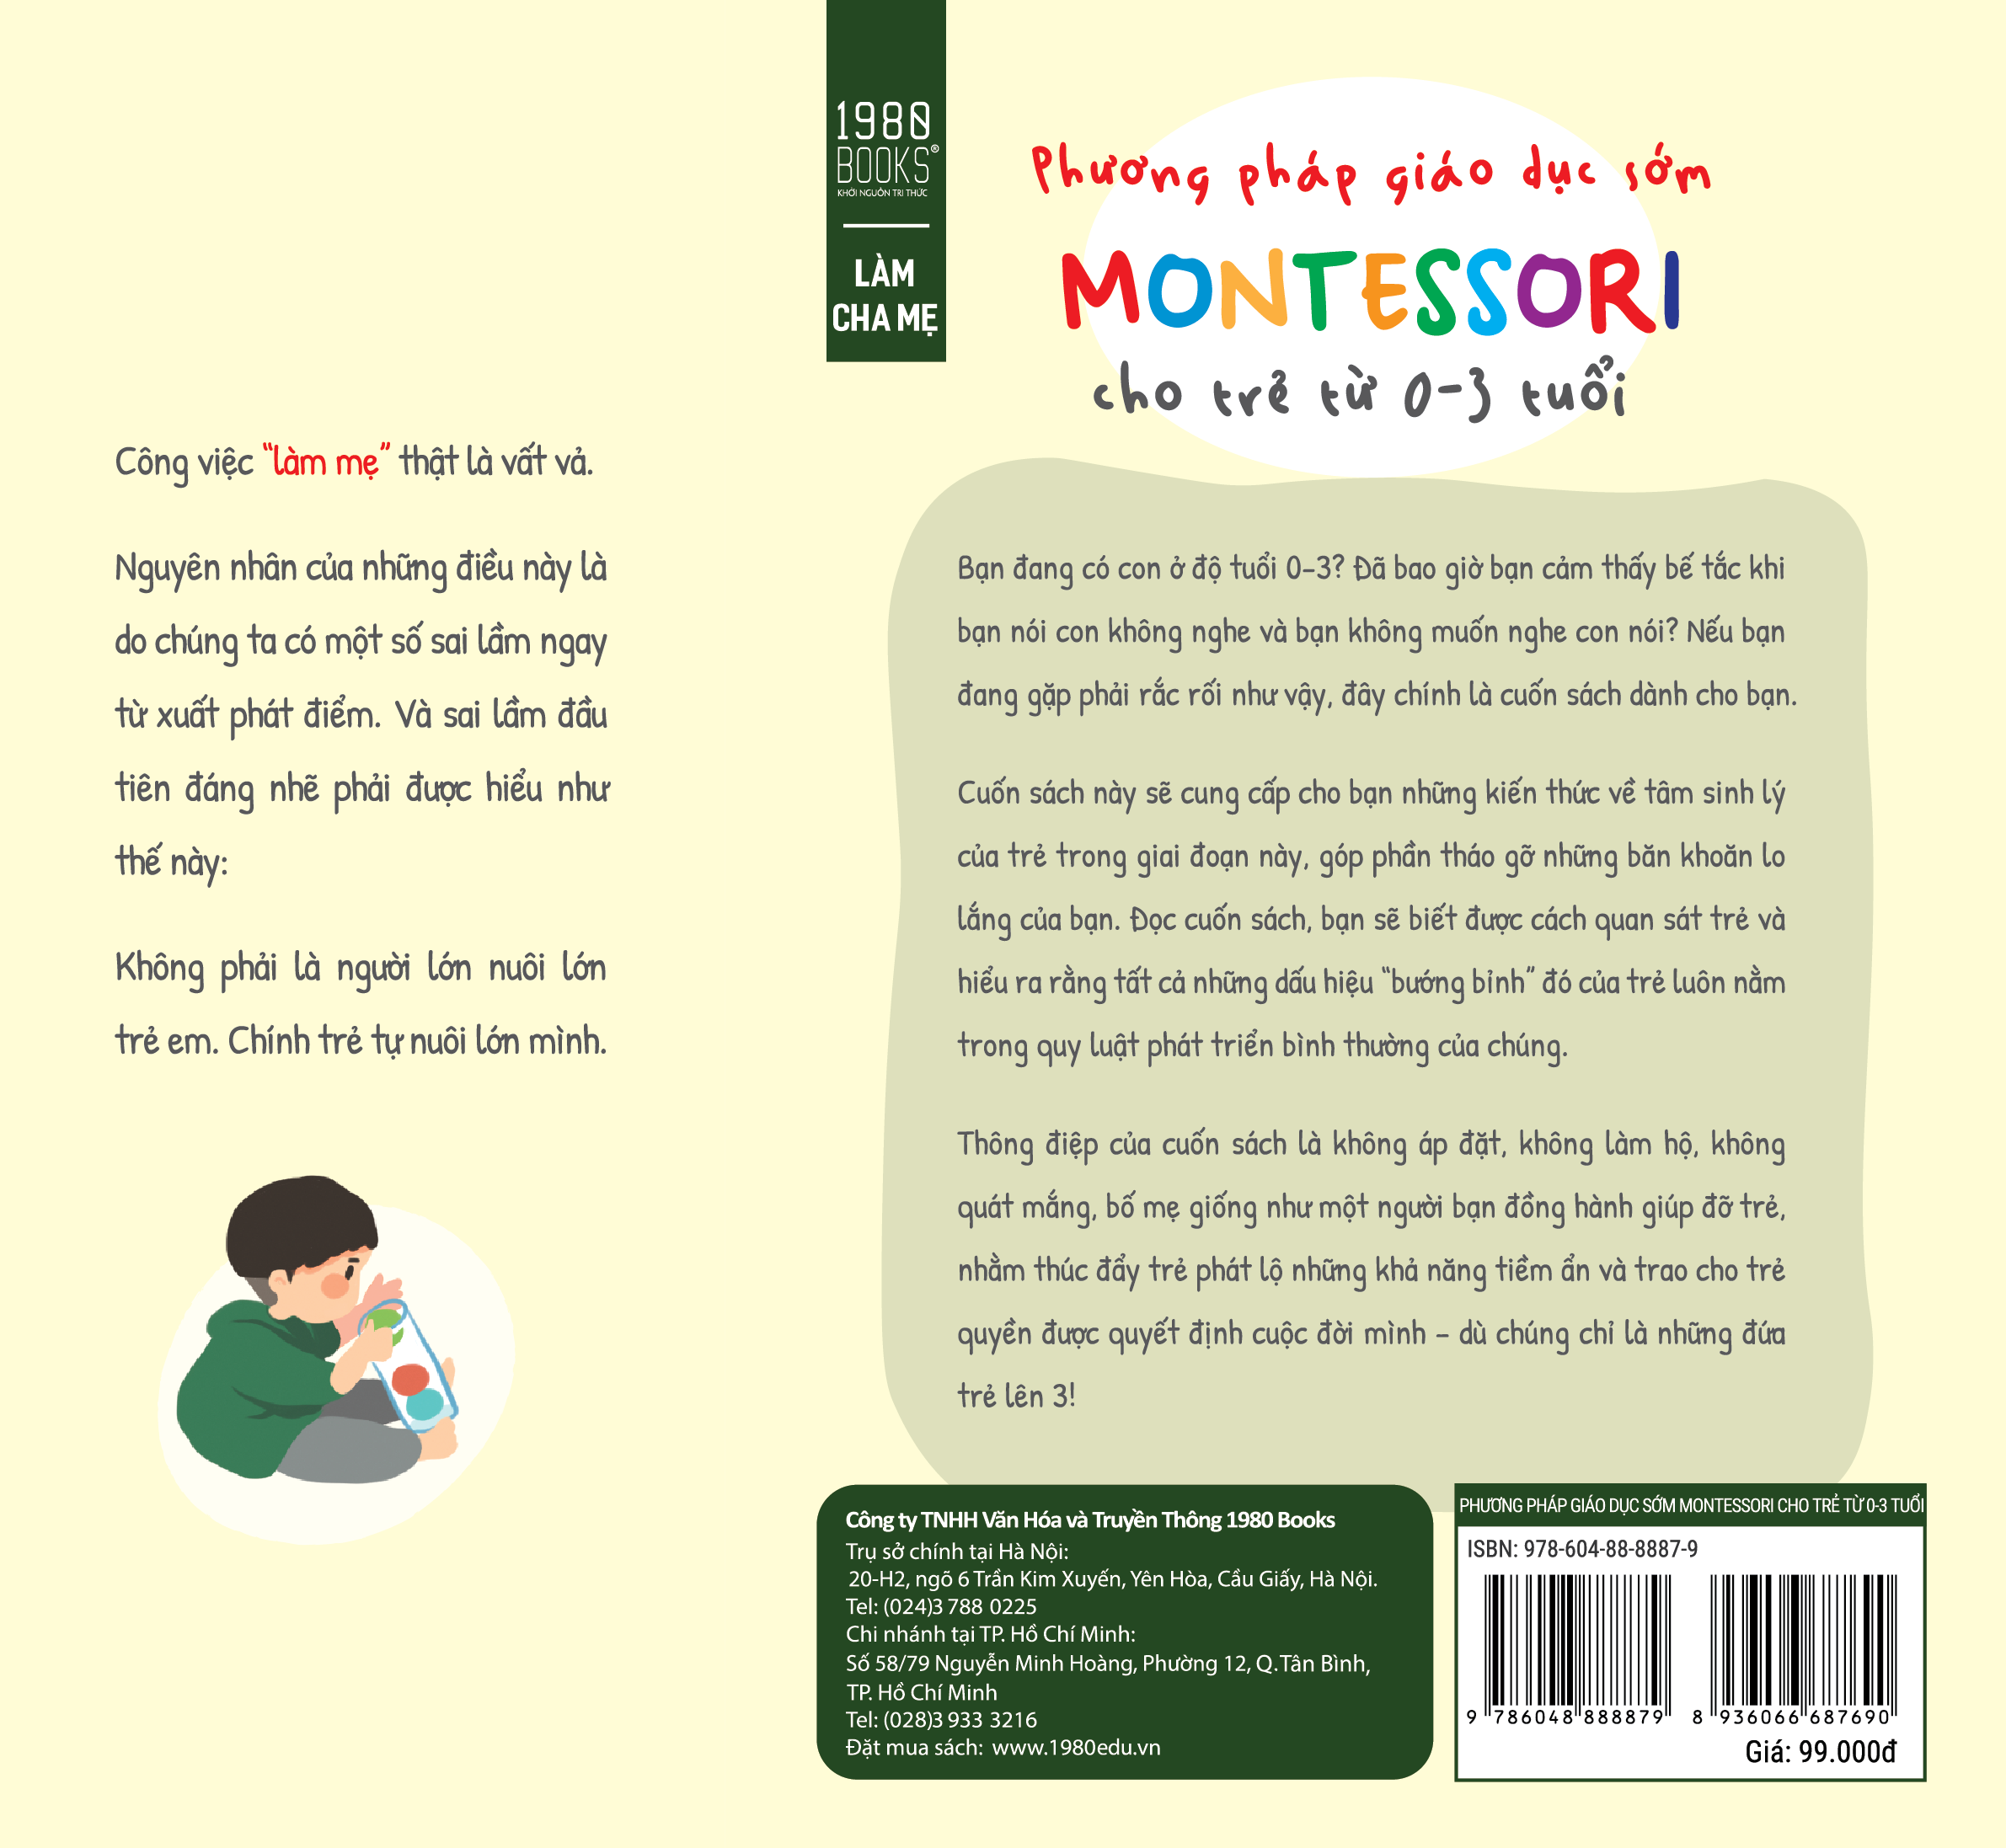 Phương pháp giáo dục sớm Montessori cho trẻ từ 0-3 tuổi